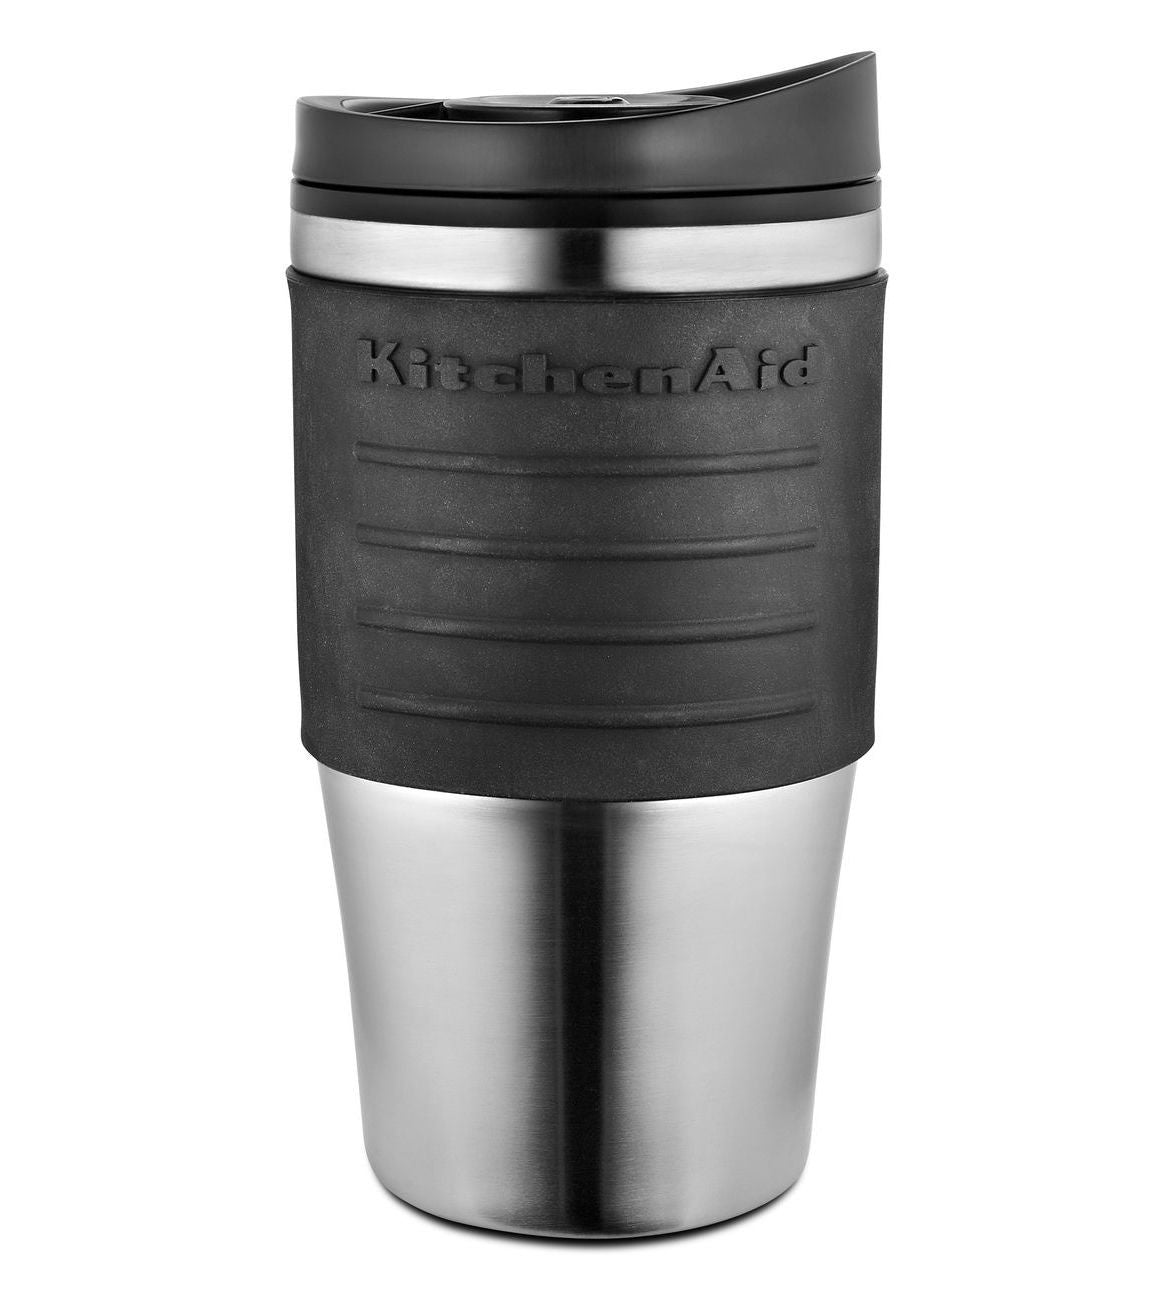 KitchenaidAid Travel Coffee Mug for KCM0402 - Onyx Black KCM0402TMOB